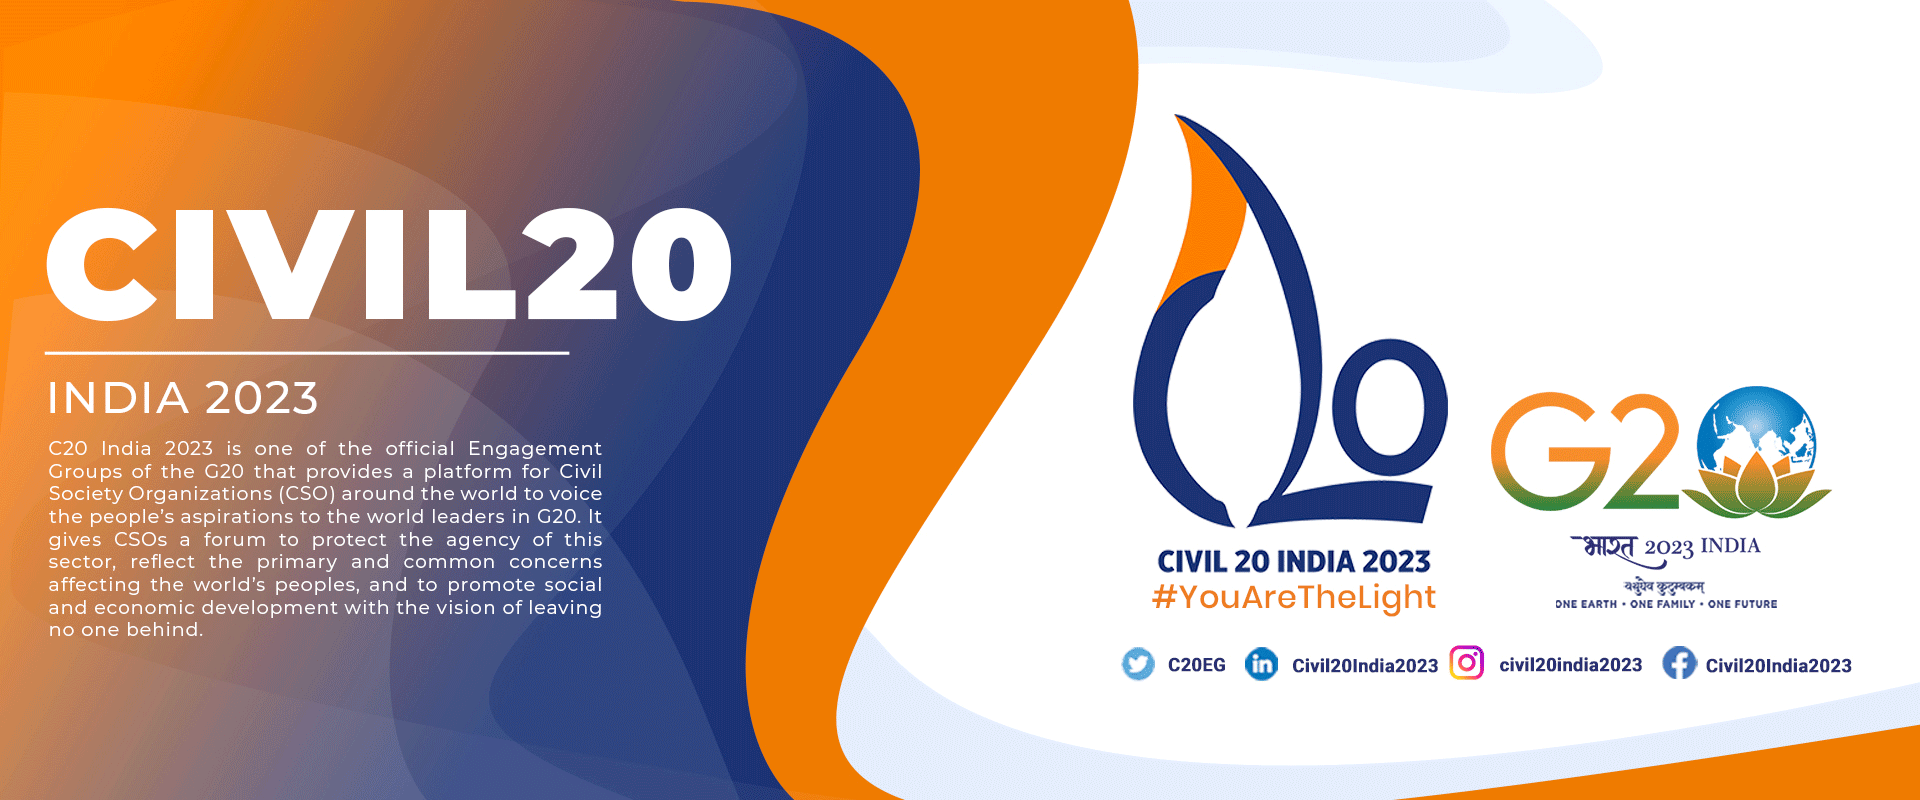 Η ομάδα Civil20 διαδραματίζει κρίσιμο ρόλο στις πρωτοβουλίες των G20! Προσπαθεί να προωθήσει την ειρήνη στον κυβερνοχώρο